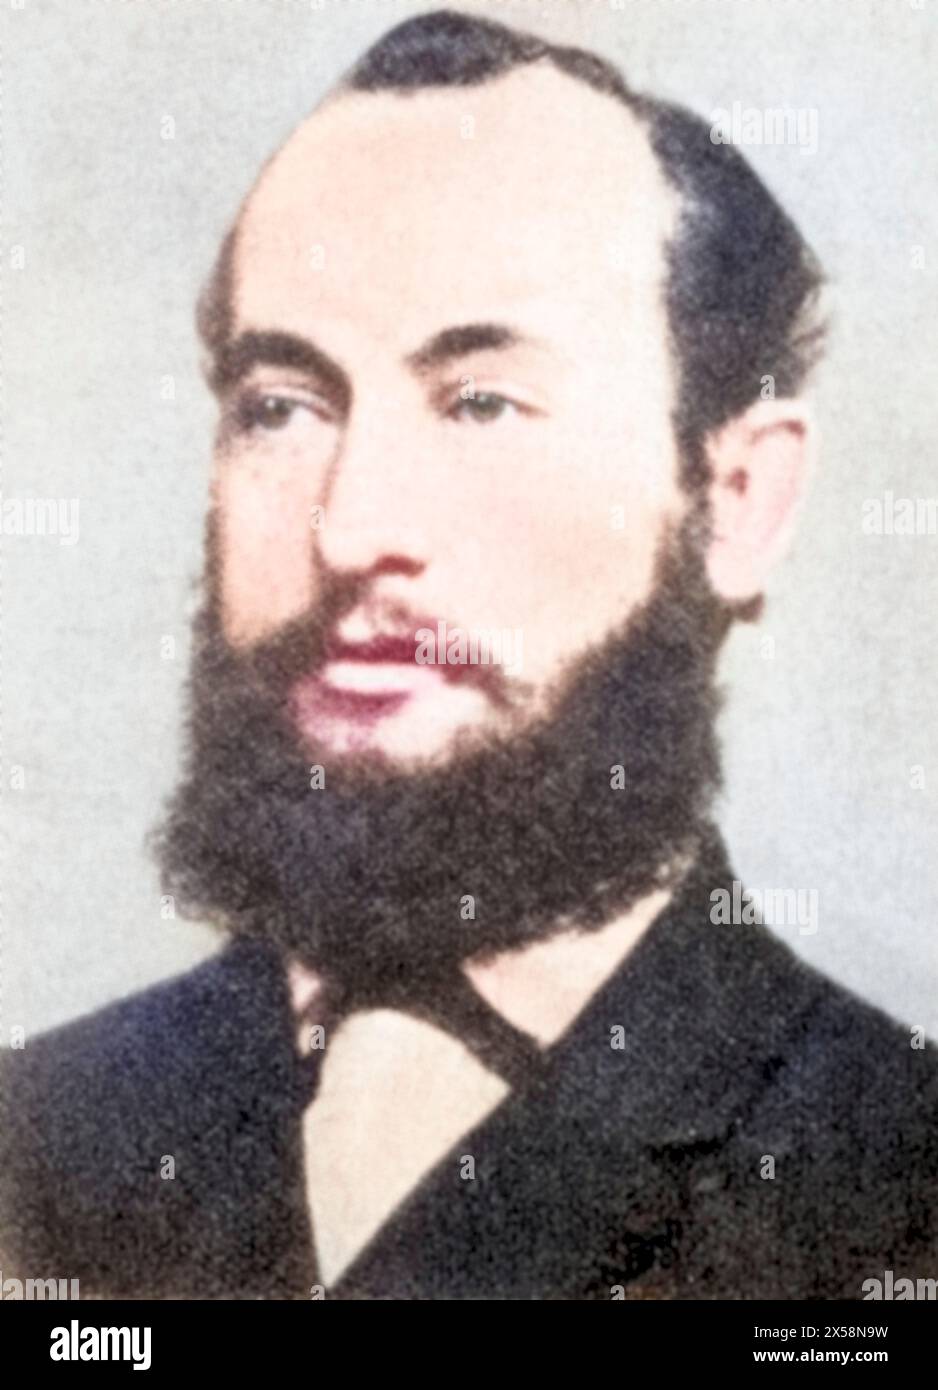 Hasenclever, Wilhelm, 19.4.1837 - 3,7.1889, homme politique allemand, portrait, INFORMATIONS-AUTORISATION-DROITS-SUPPLÉMENTAIRES-NON-DISPONIBLES Banque D'Images